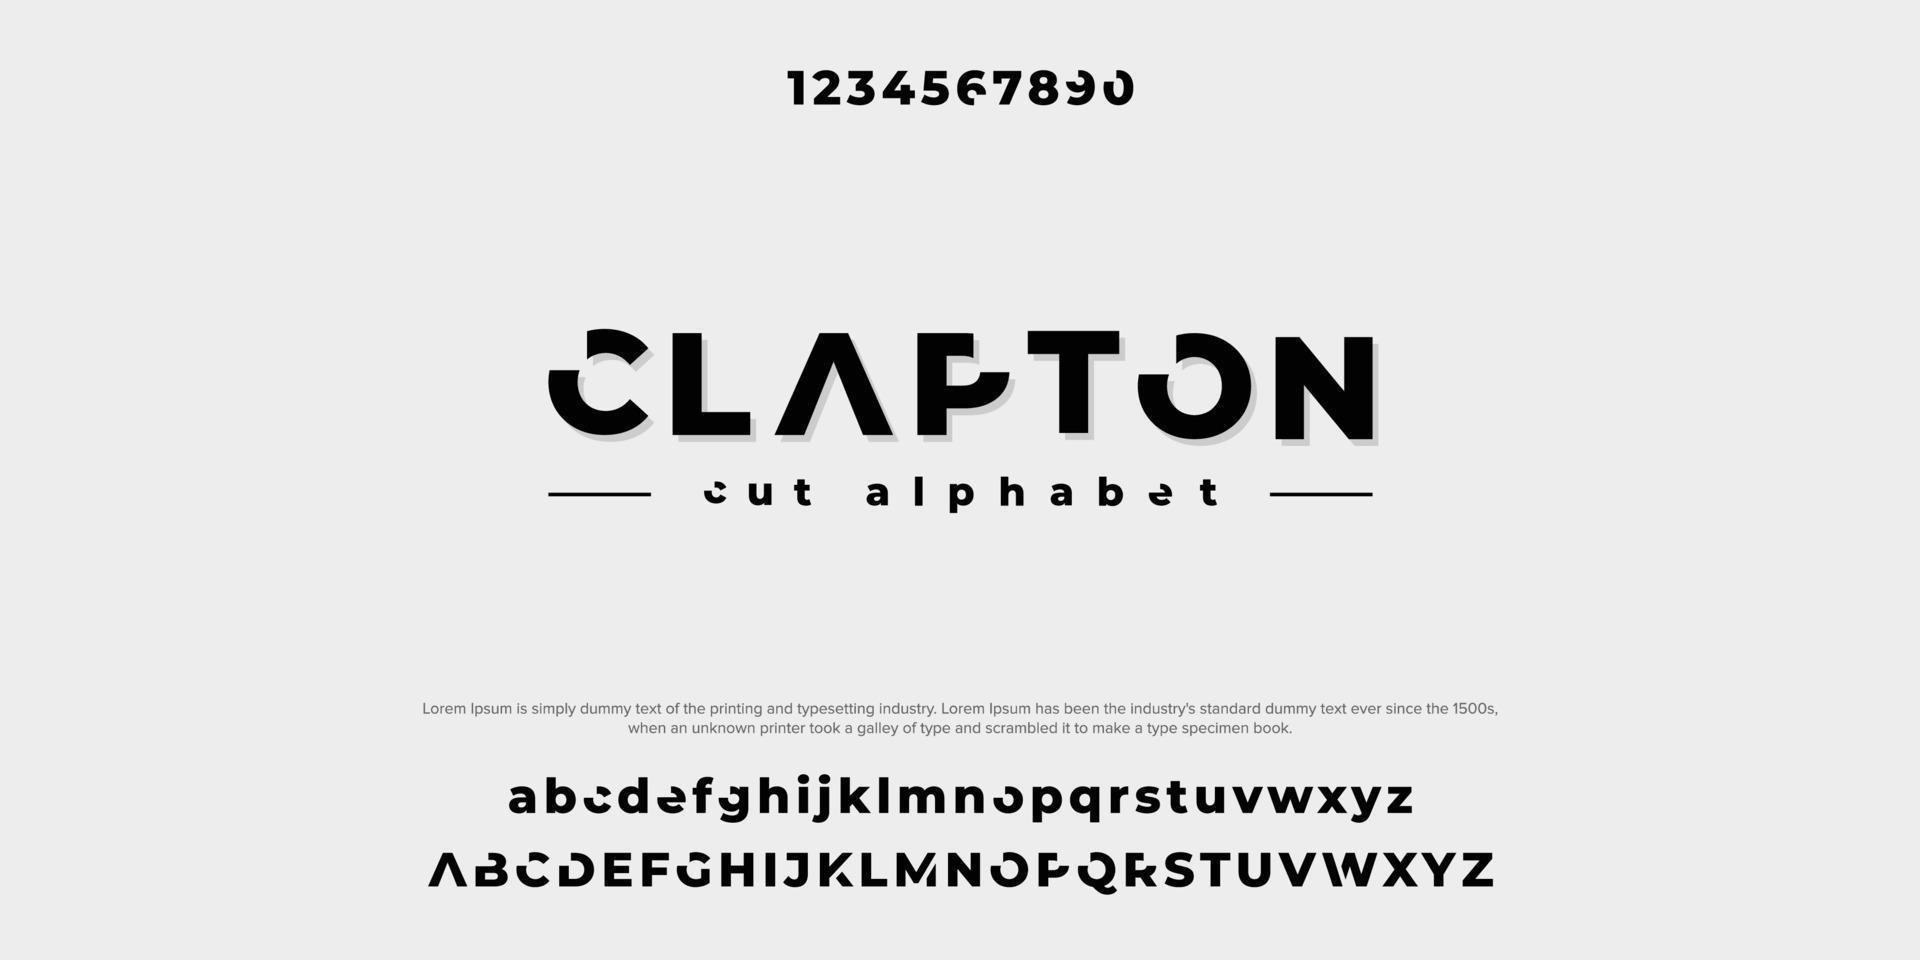 fuentes del alfabeto moderno minimalista abstracto de clapton. Ilustración de vector de tecnología de tipografía